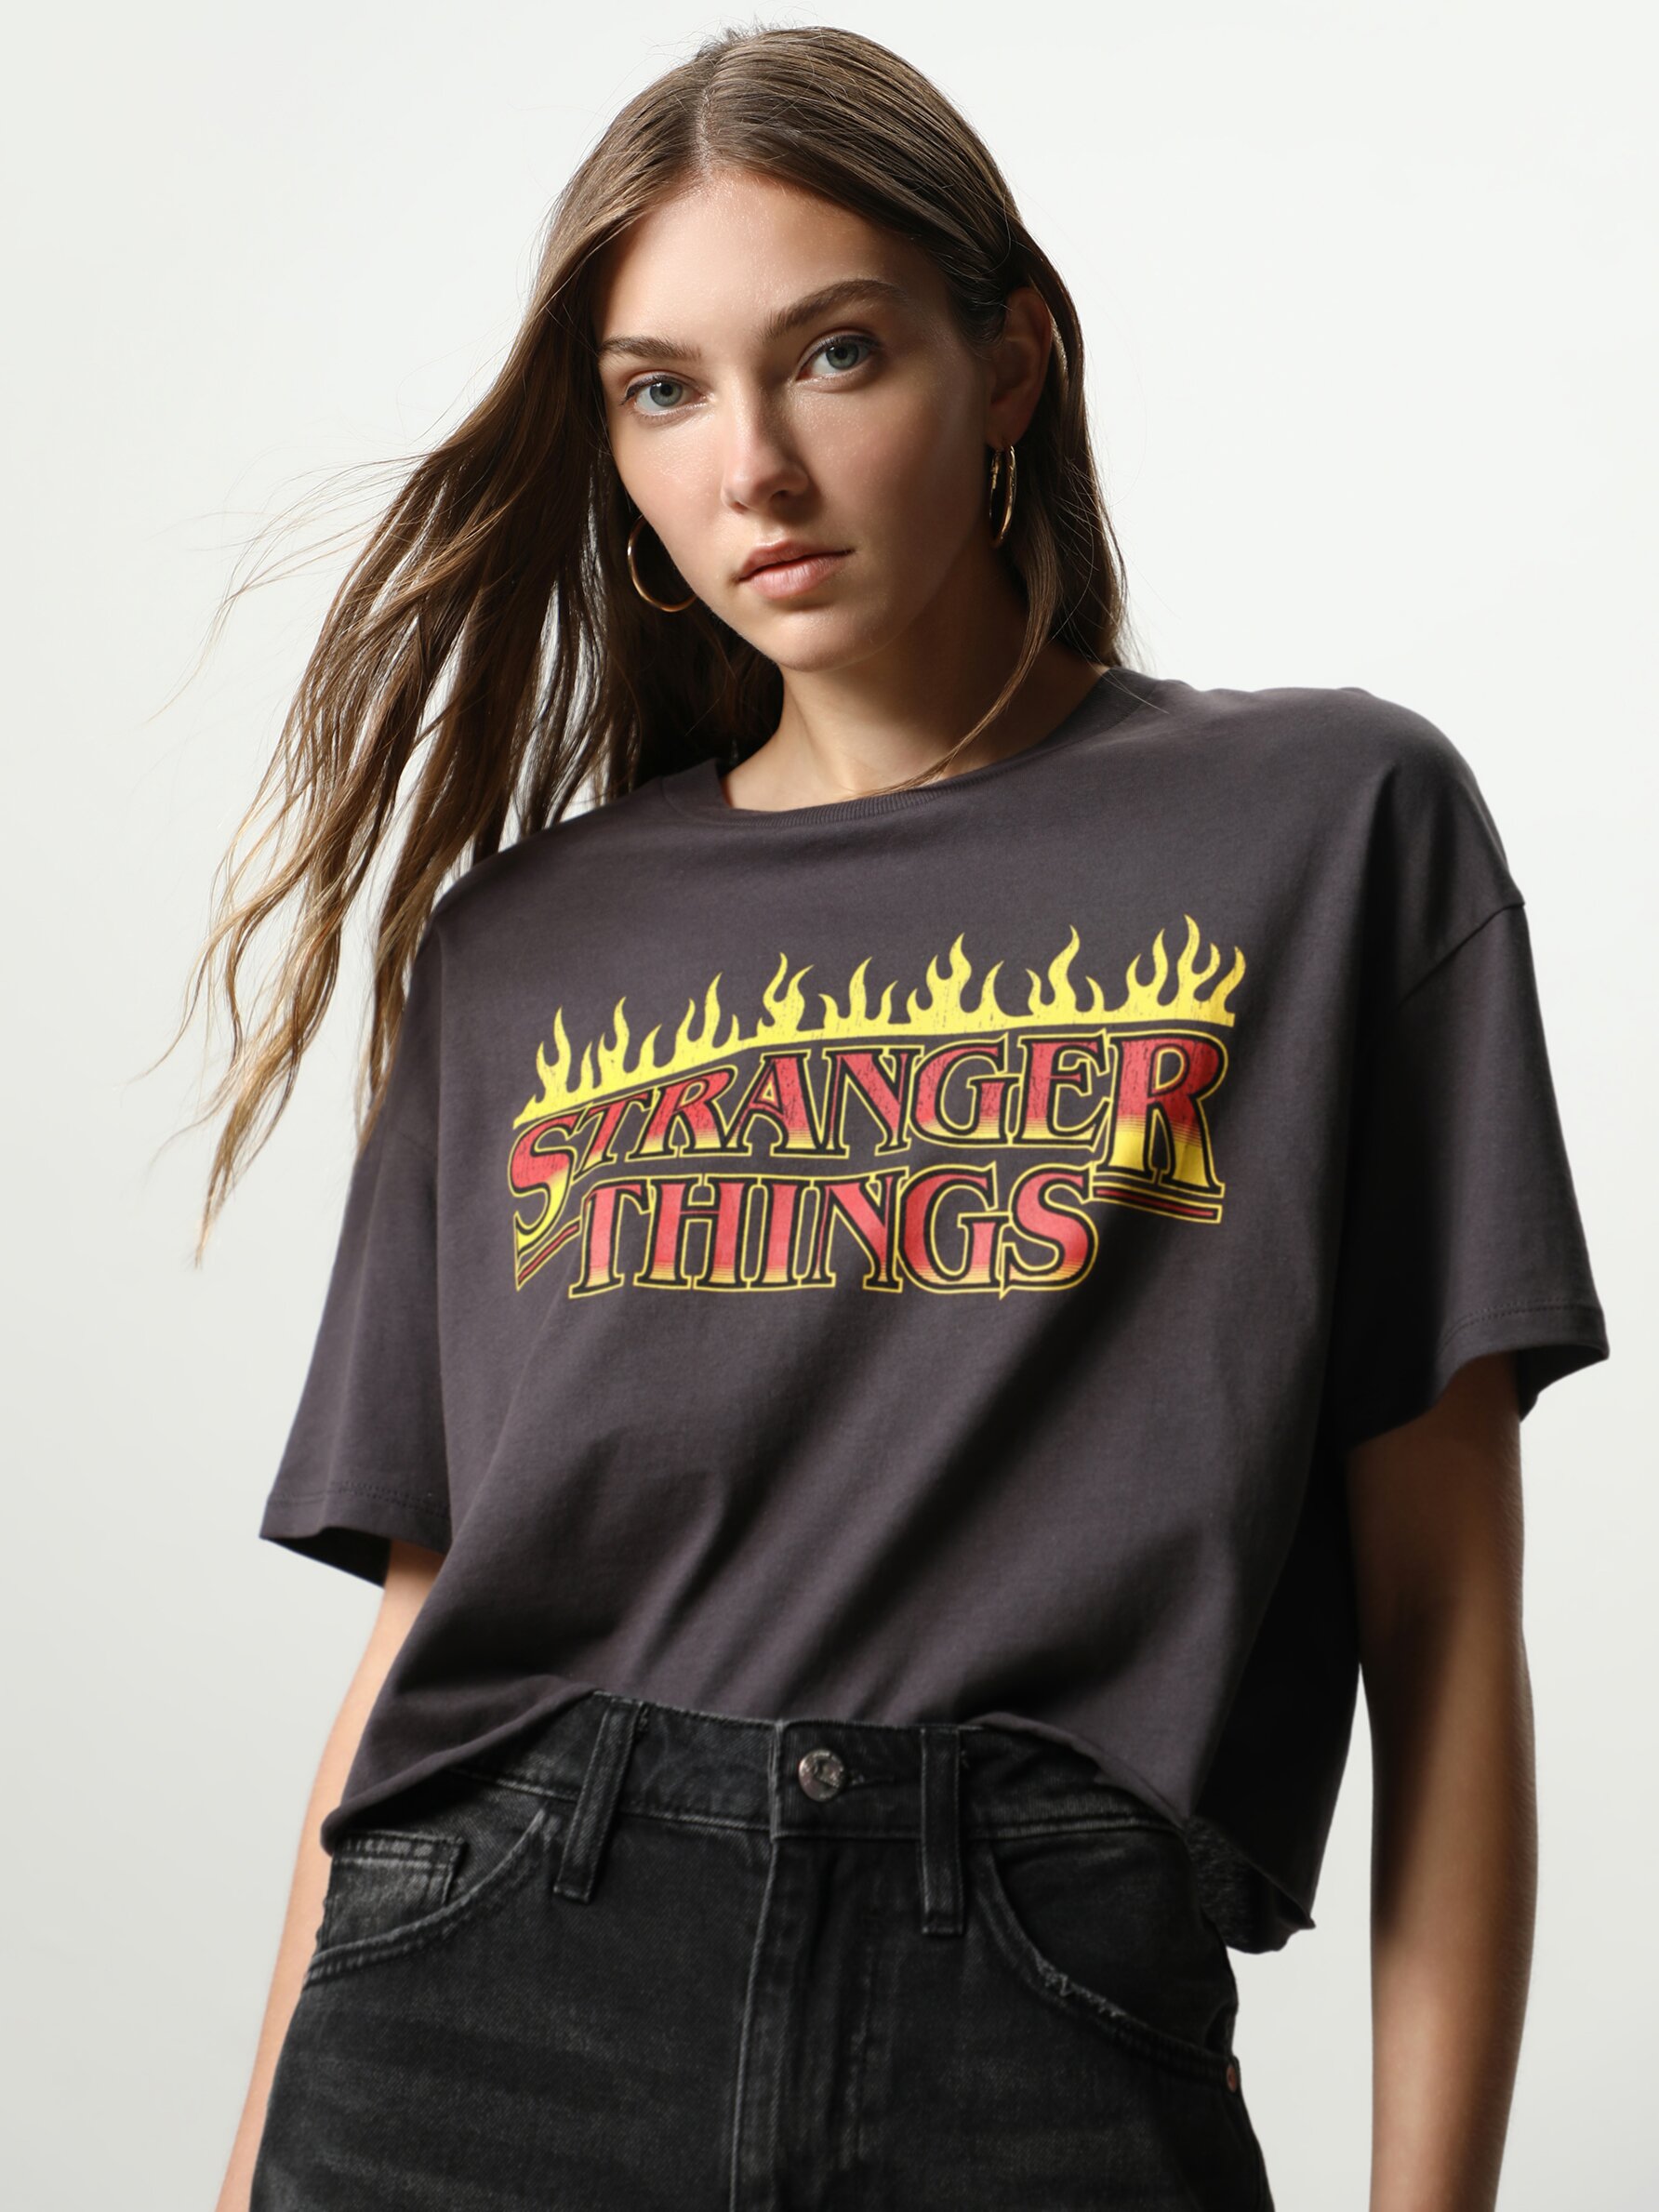 T-shirt imprimé Stranger Things™/© Netflix pour femme avec un col rond, des manches courtes et un bord-côte élastique au niveau du cou. Il a un imprimé sur le devant du vêtement.